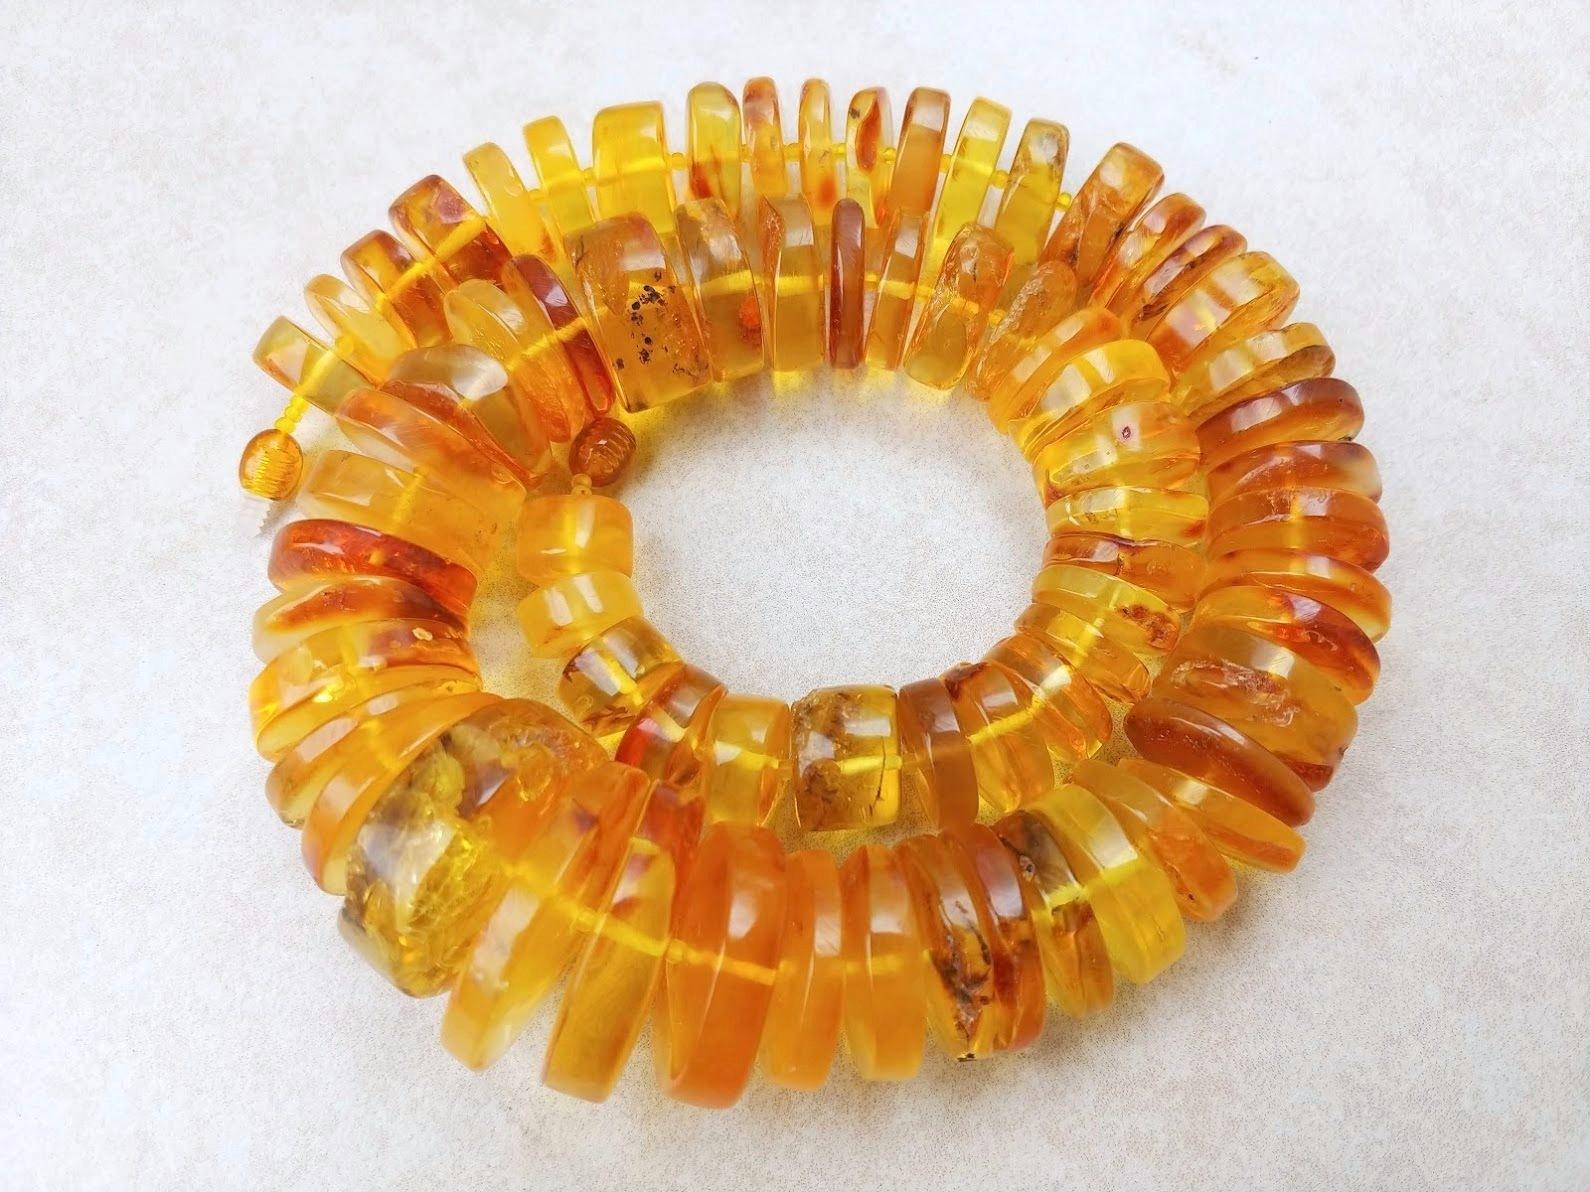 La longueur du collier est de 53 cm. Disques d'ambre baltique brut coupés en morceaux vivants. La taille varie de 15 à 32 mm.
La couleur de l'ambre est transparente, miel.
La couleur est authentique et naturelle.
Ambre de guérison de la Baltique